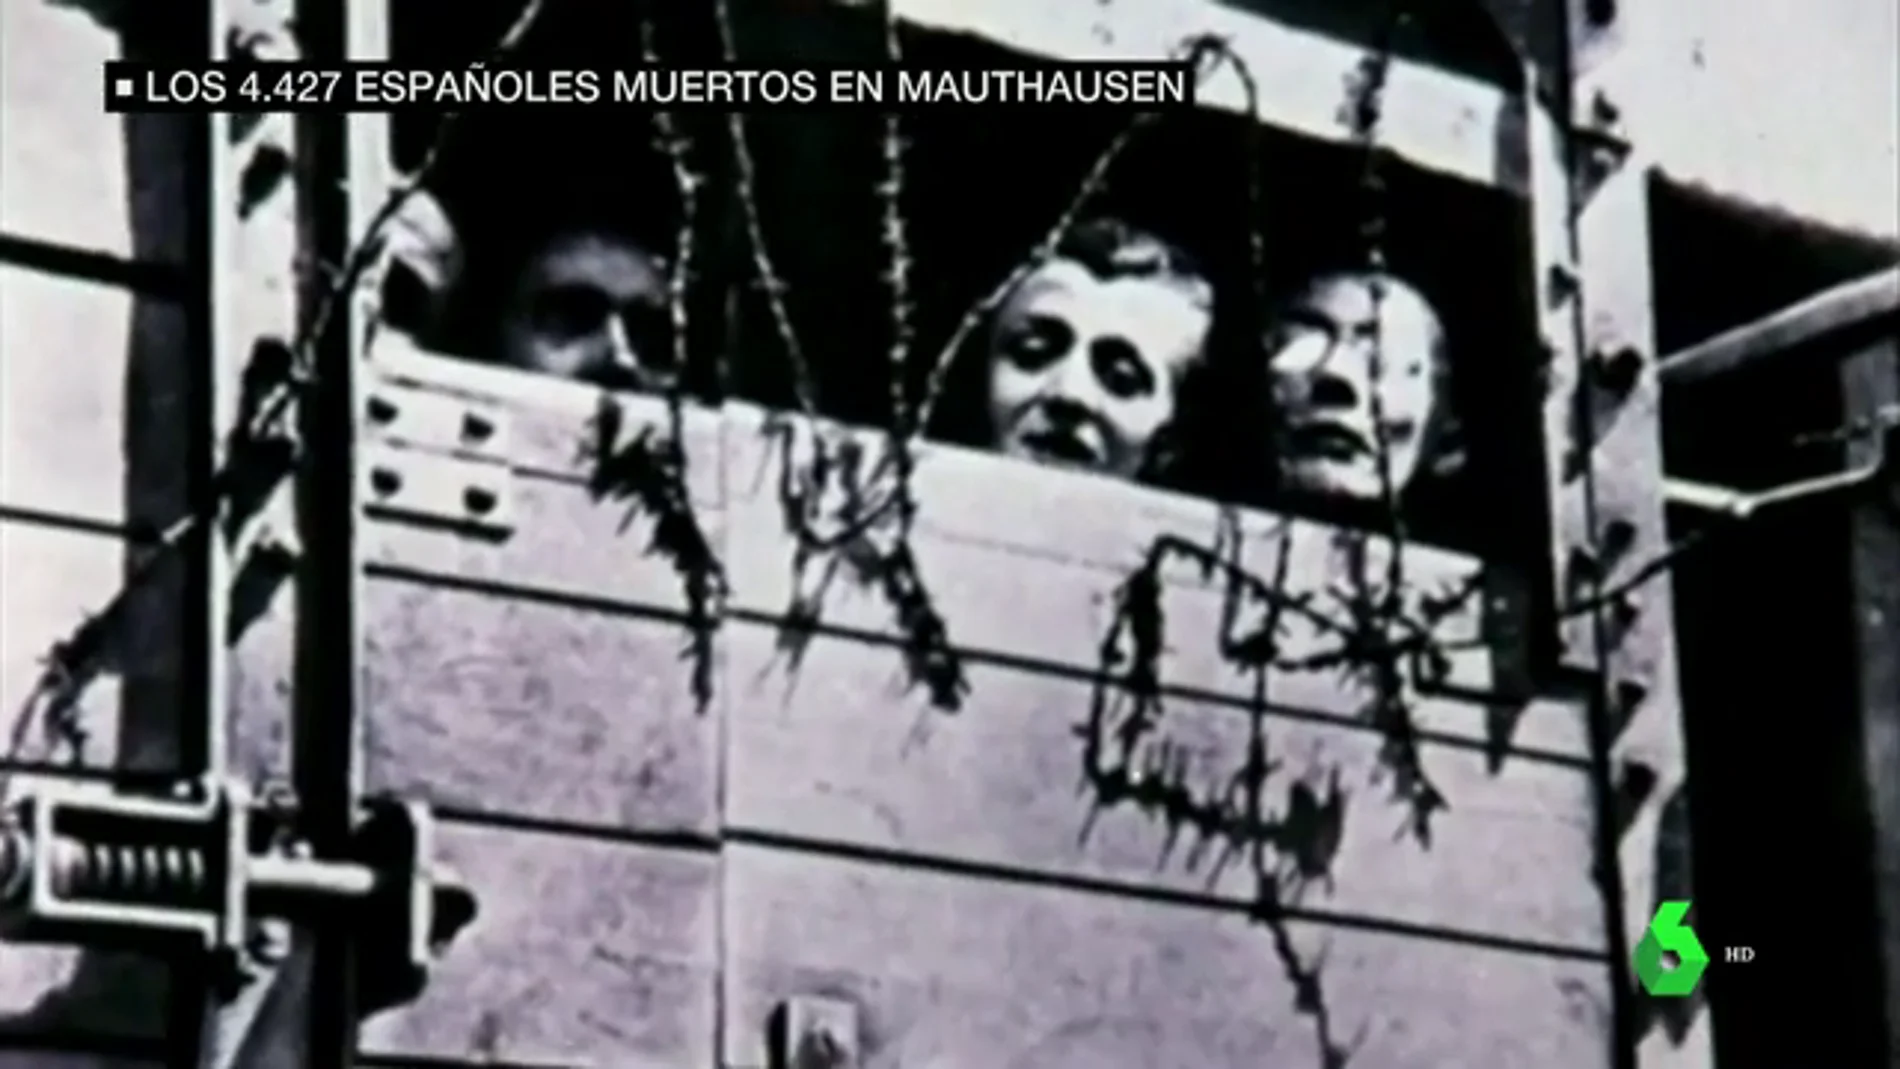 España pone nombre a los 4.427 españoles asesinados en Mauthausen y Gusen 74 años después